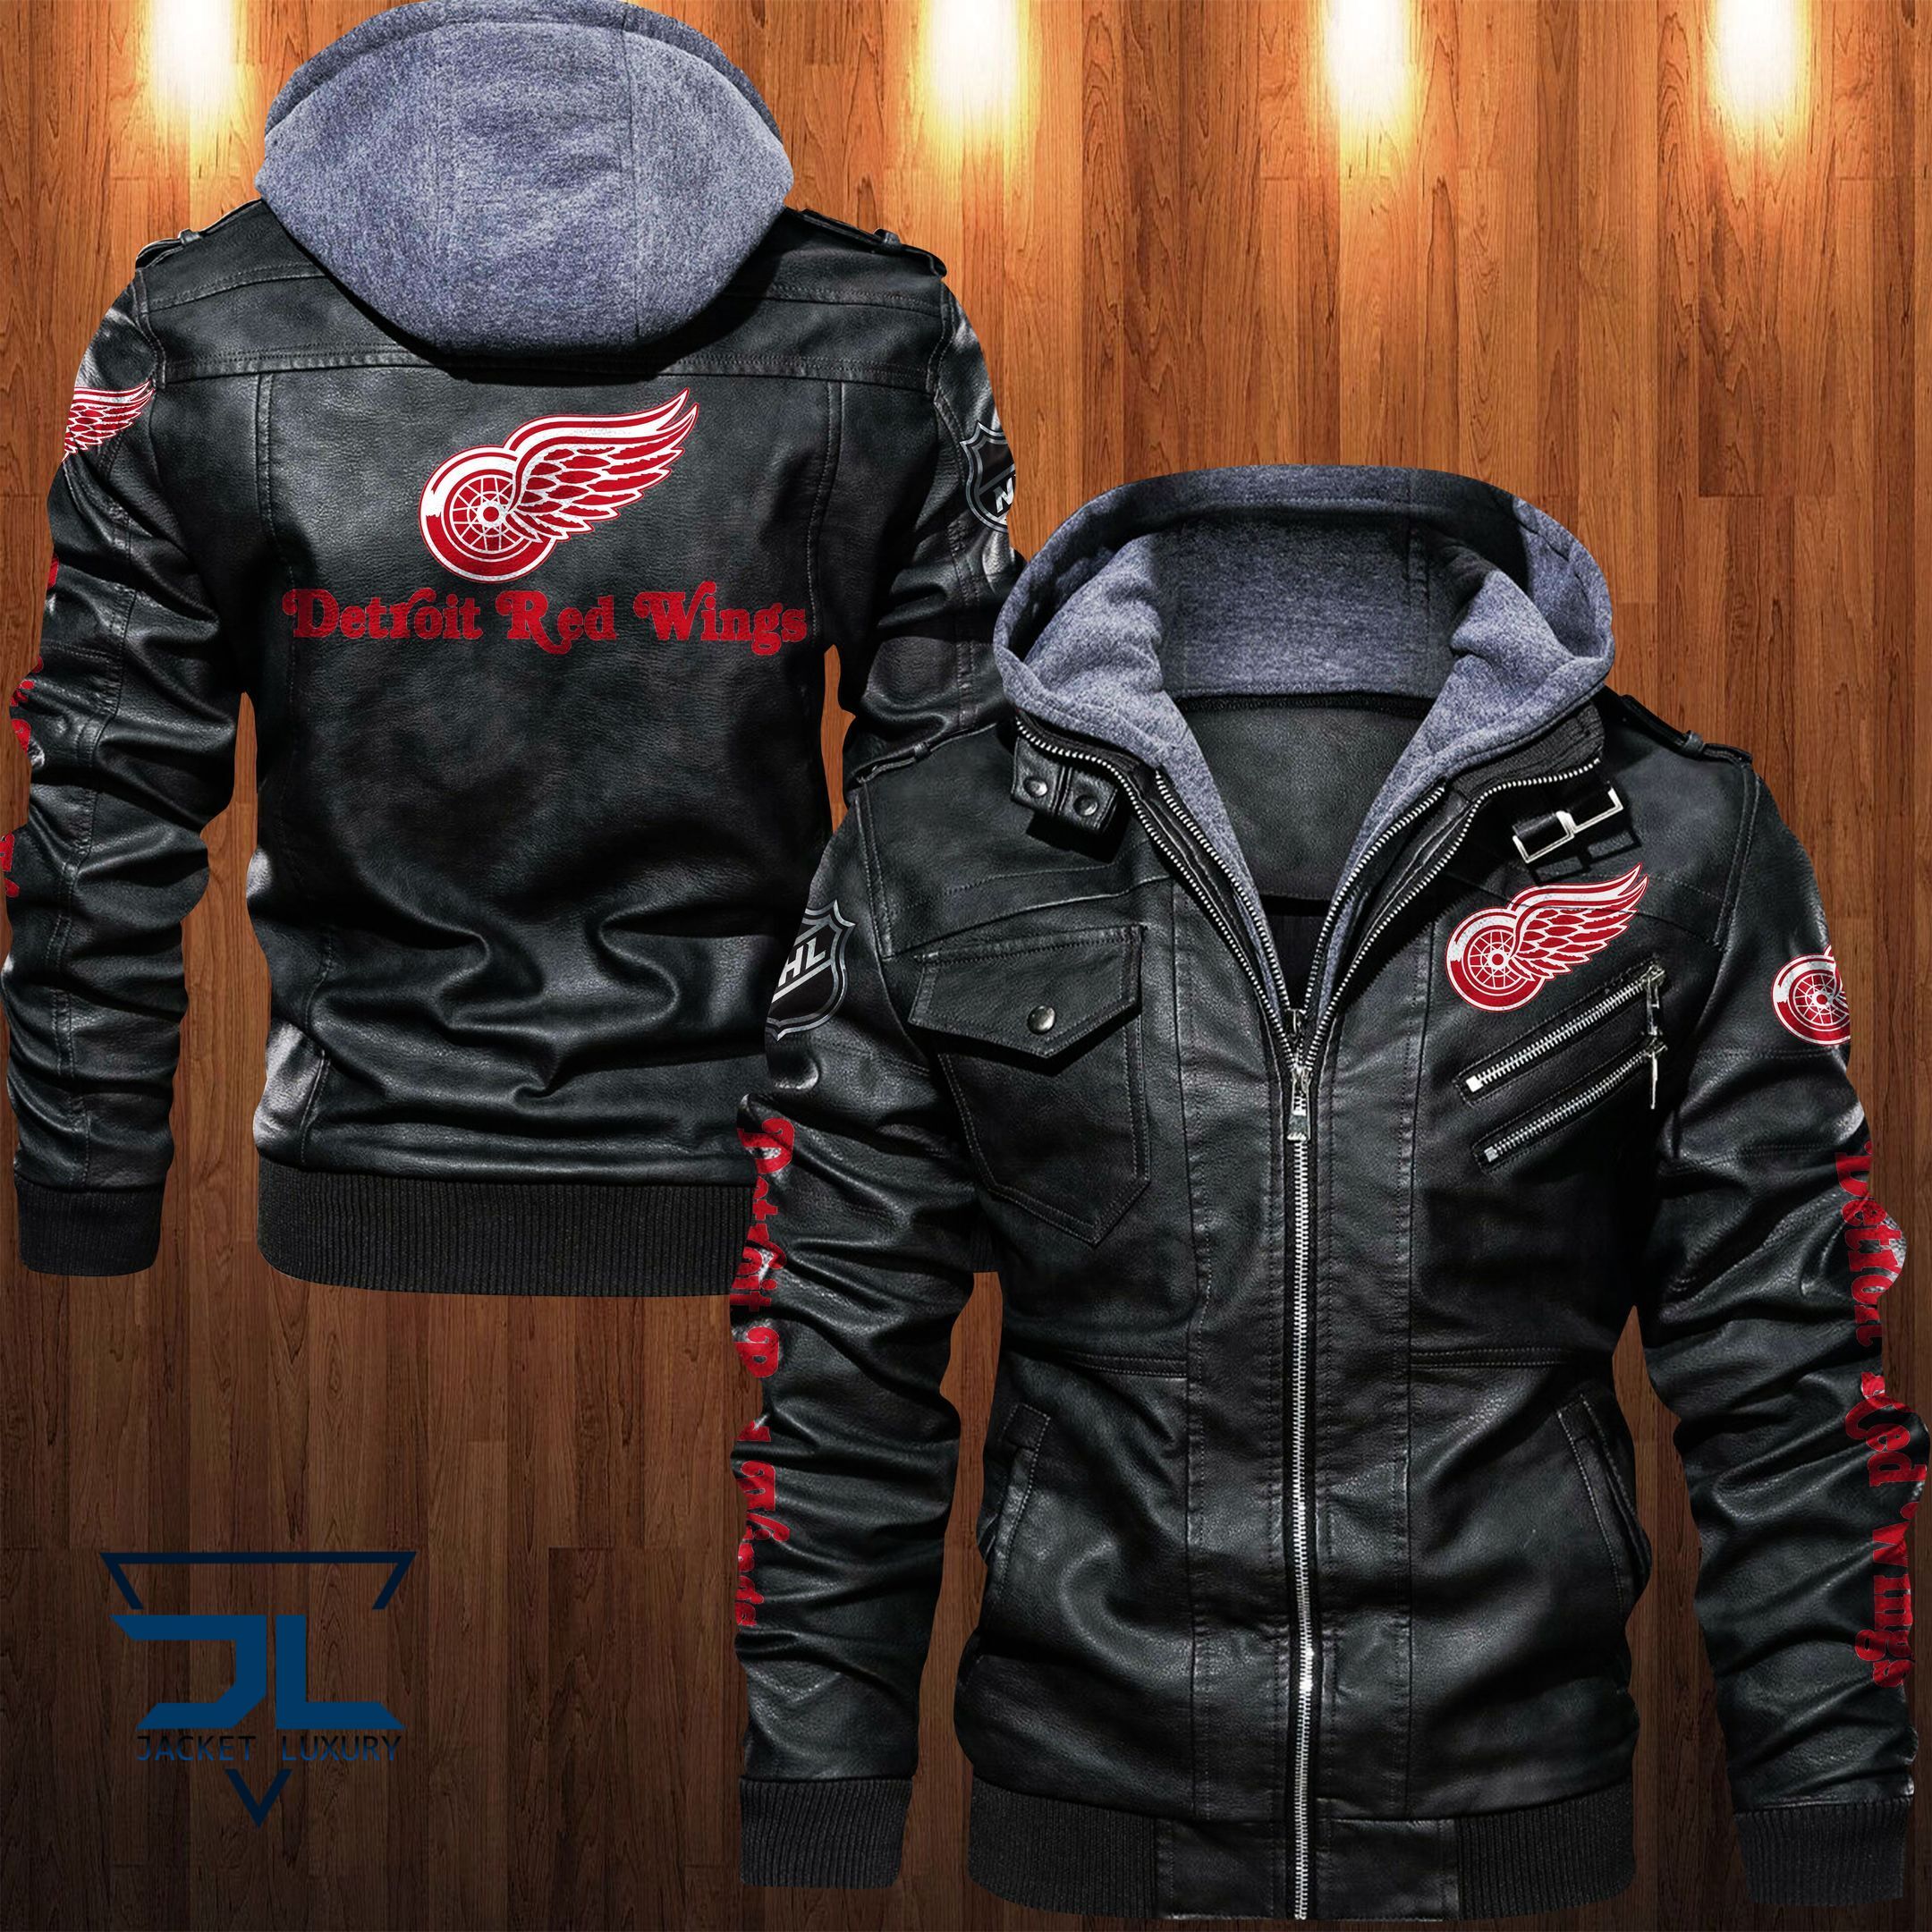 Get the best jackets under $100! 365